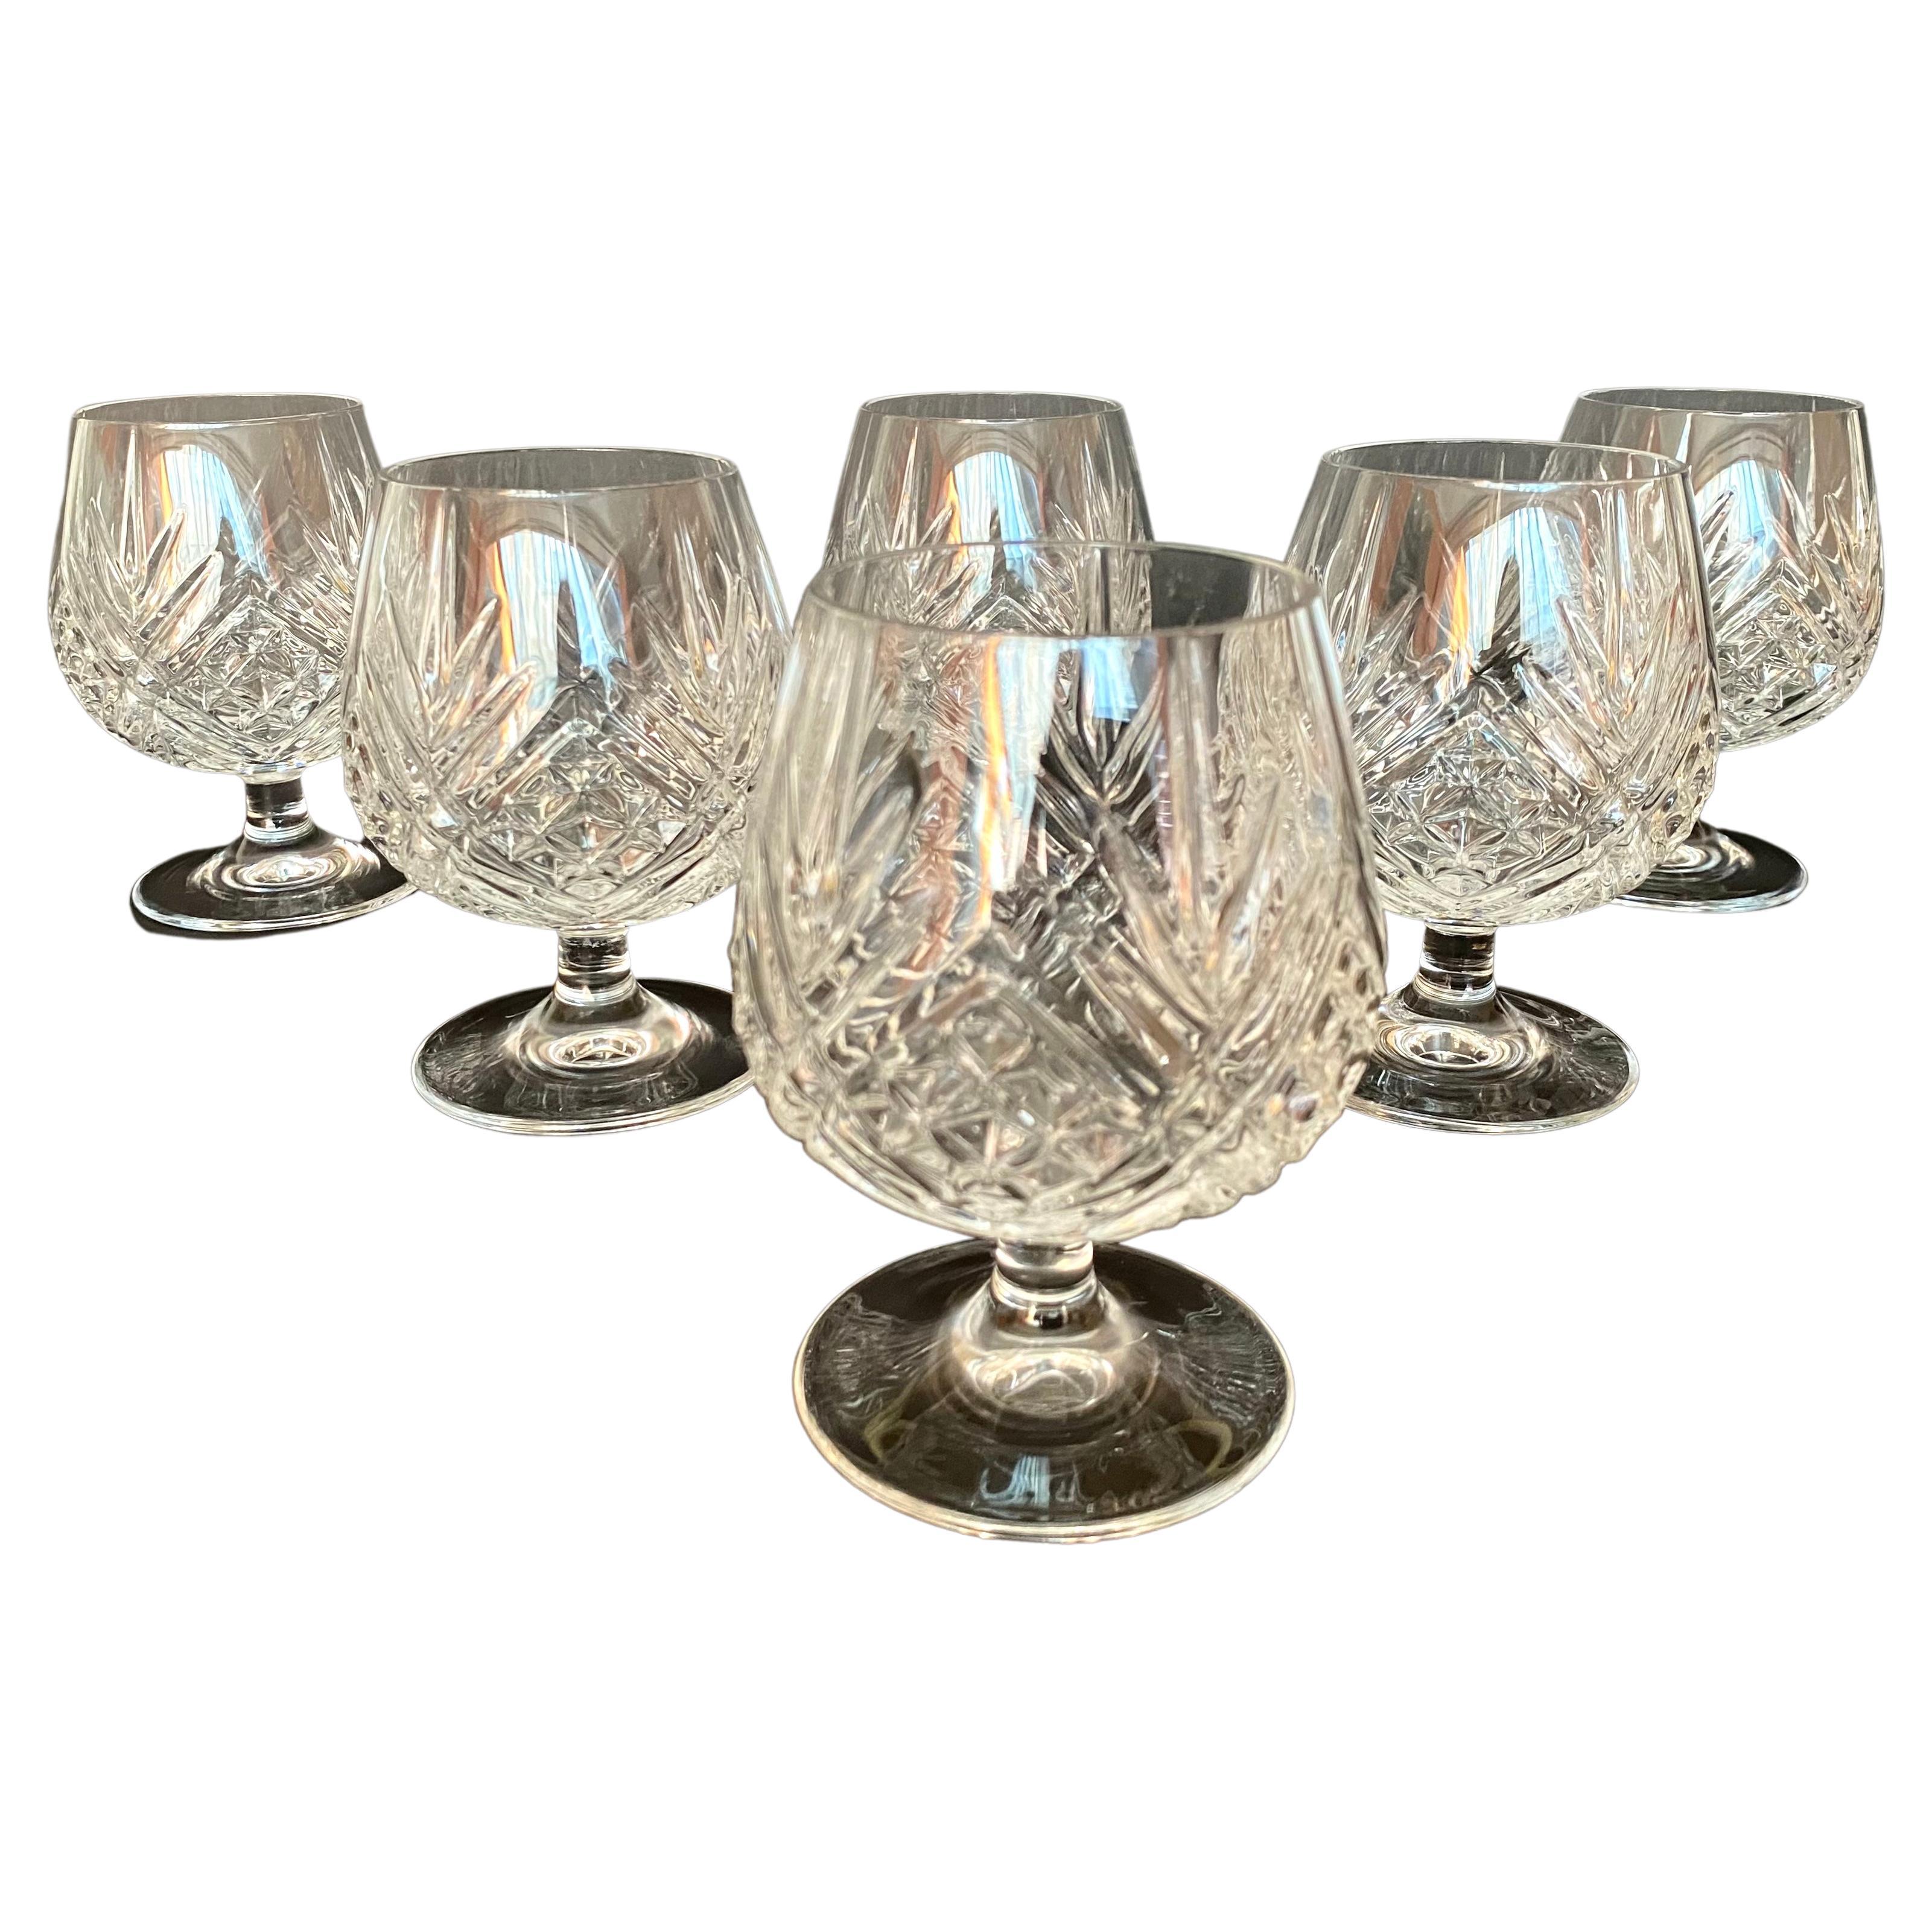 Vintage Brandy Glasses, France, Set 6  Crystal Drinking Glasses